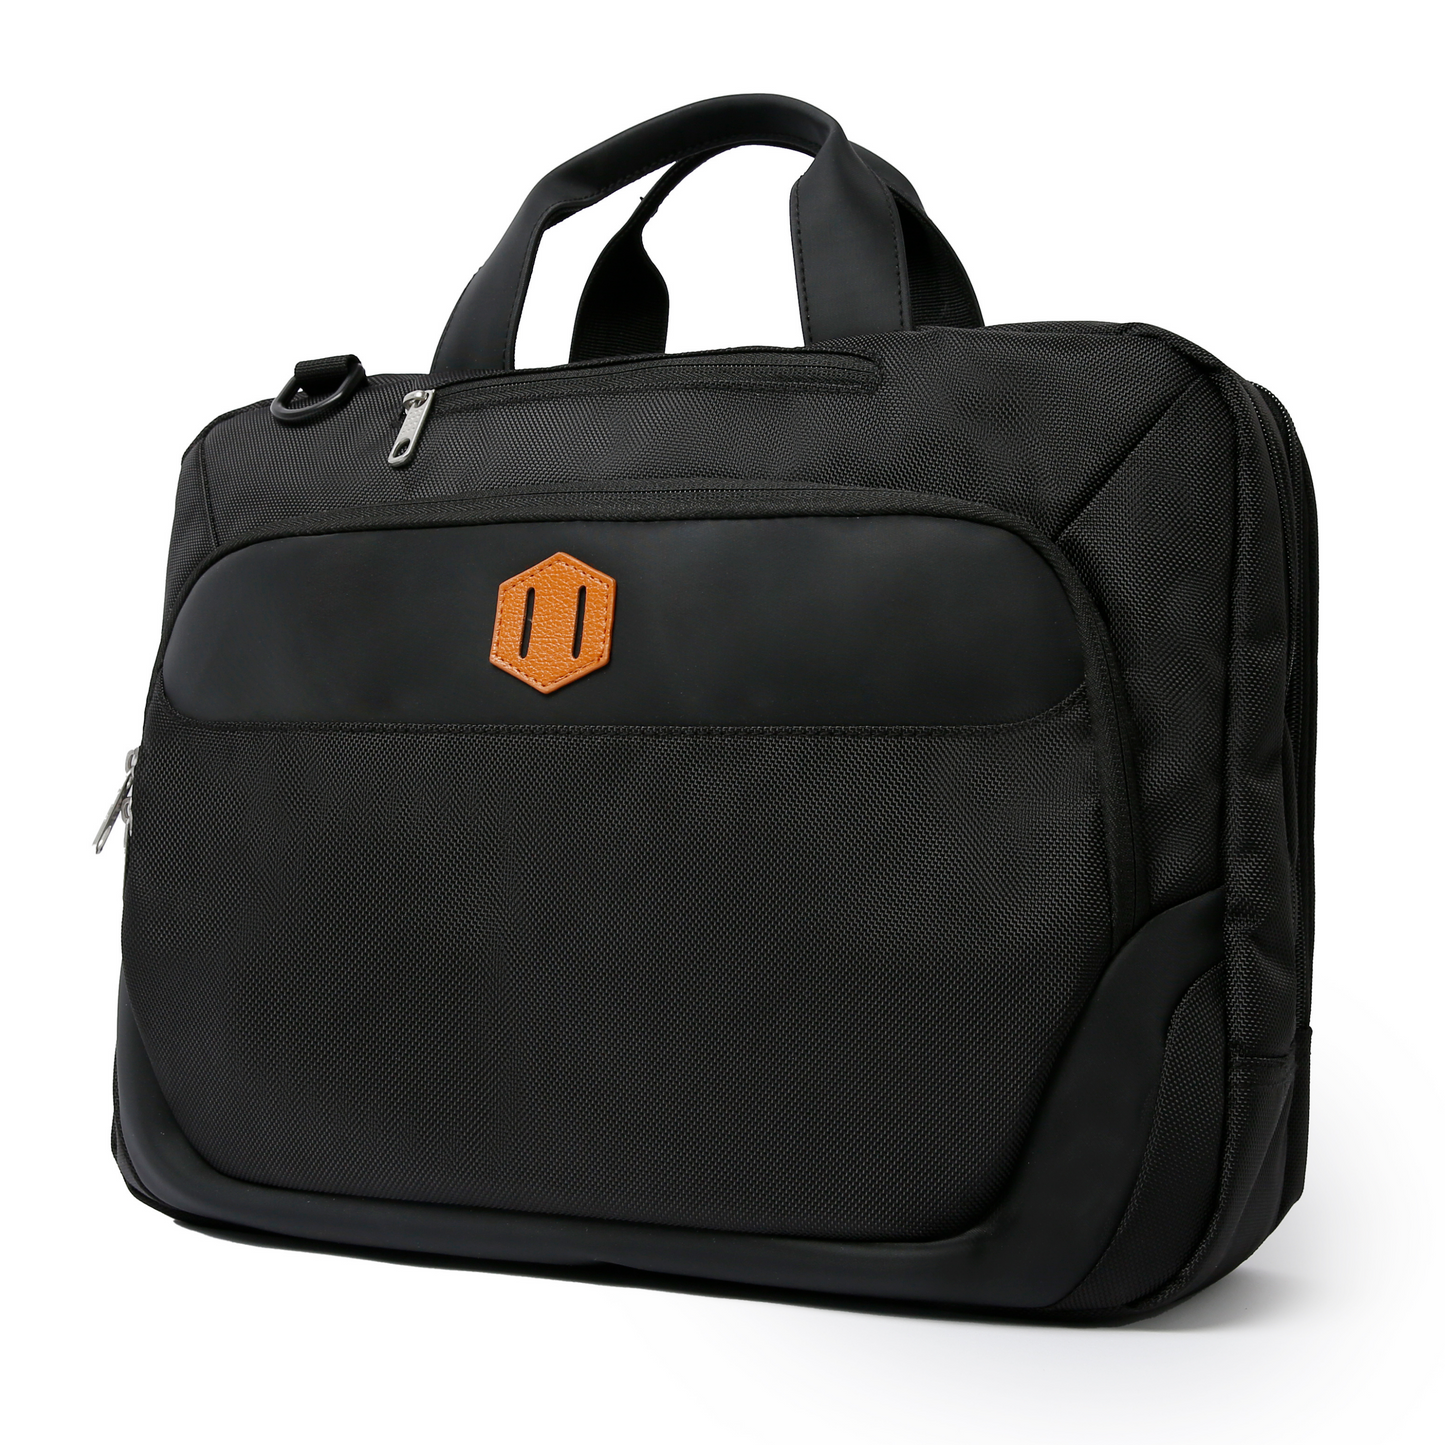 Signature Laptop Side Bag with Free Shoulder Strap